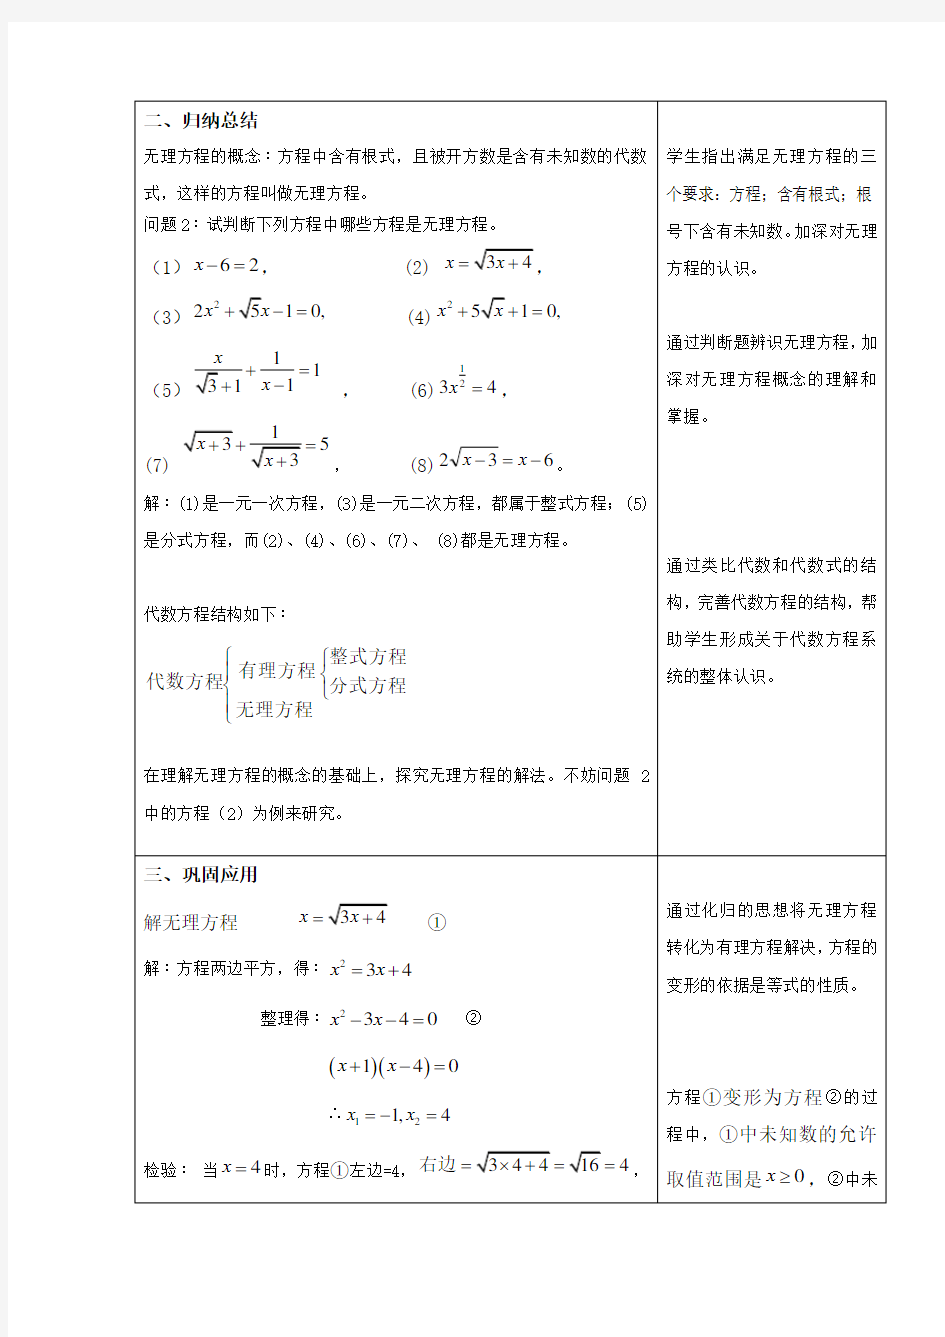 沪教版(上海)数学八年级第二学期-21.4 (1)无理方程   教案   